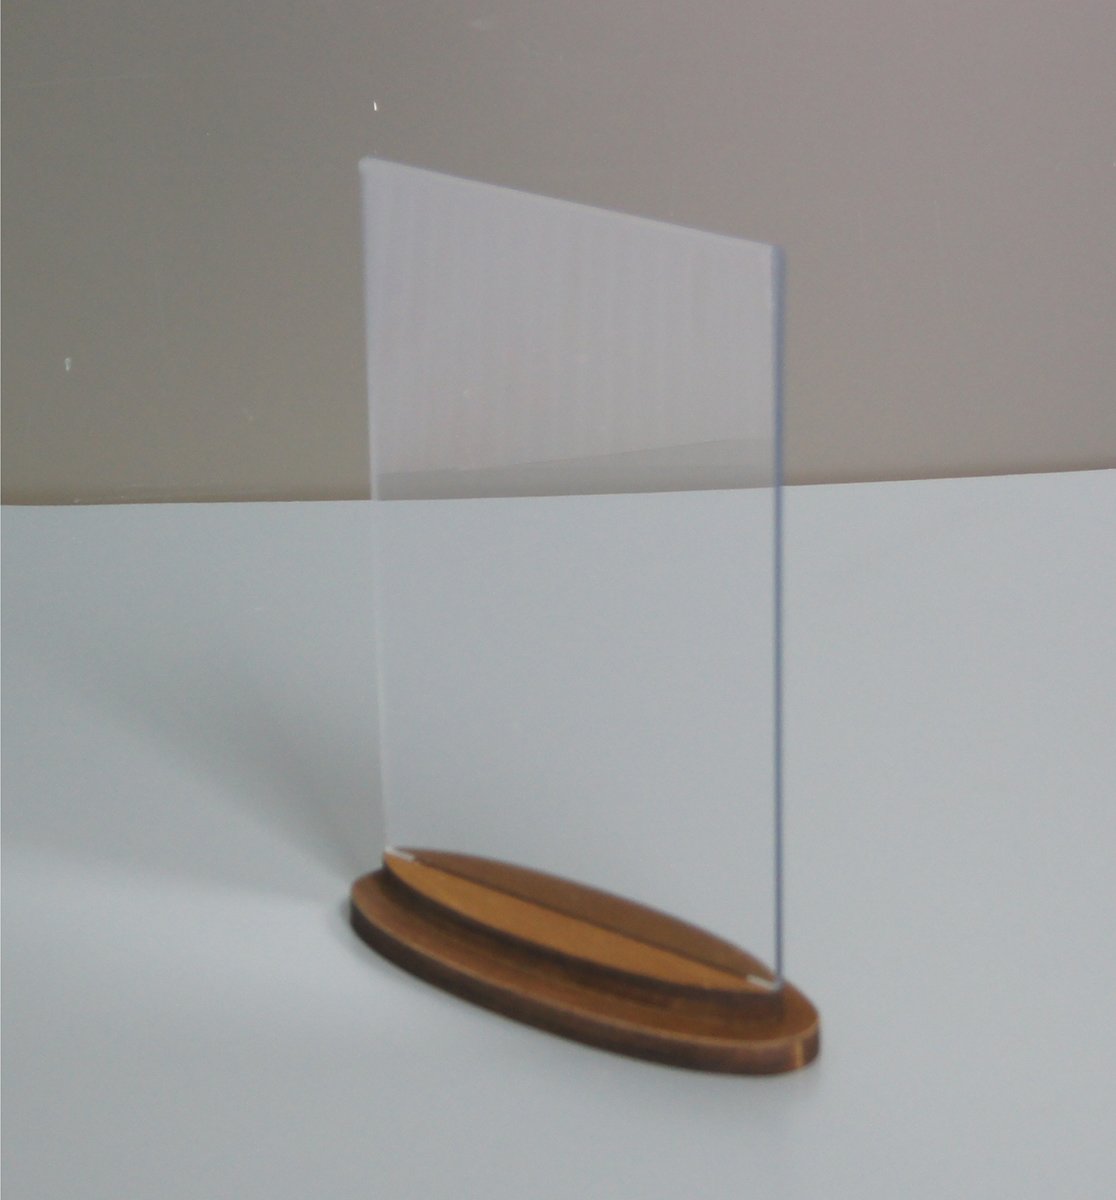 Фото товара: Тейбл тент с деревянным фигурным основанием для формата А5, арт. 14205/o